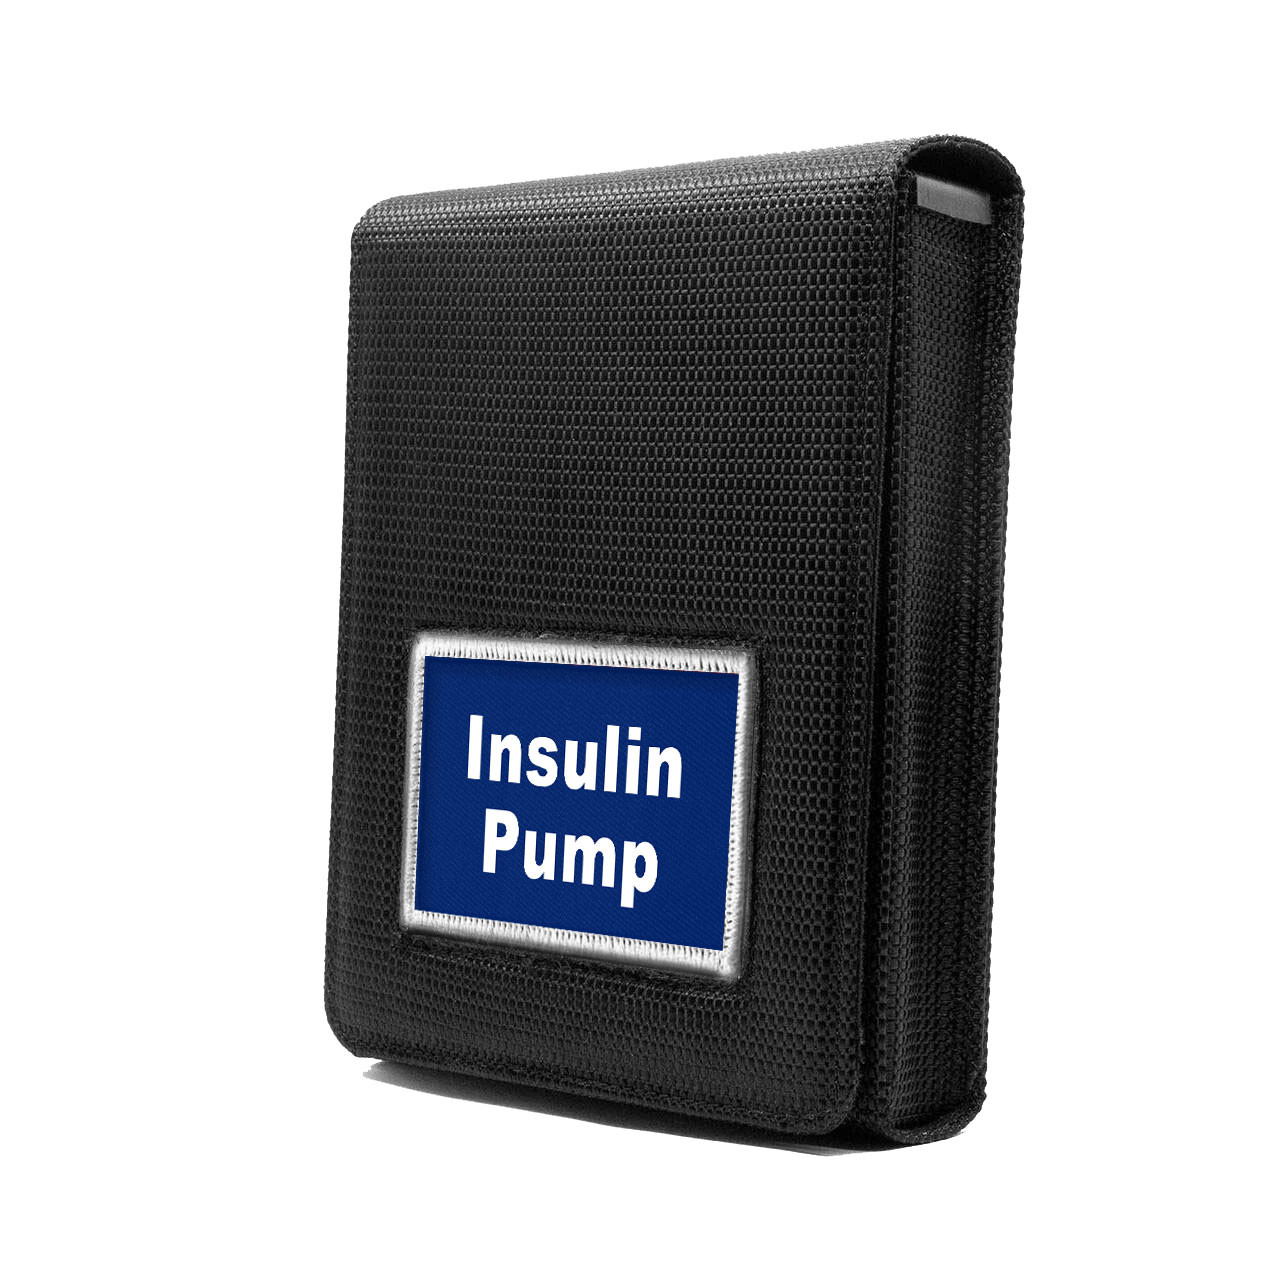 Insulin Pump Tactical Patch